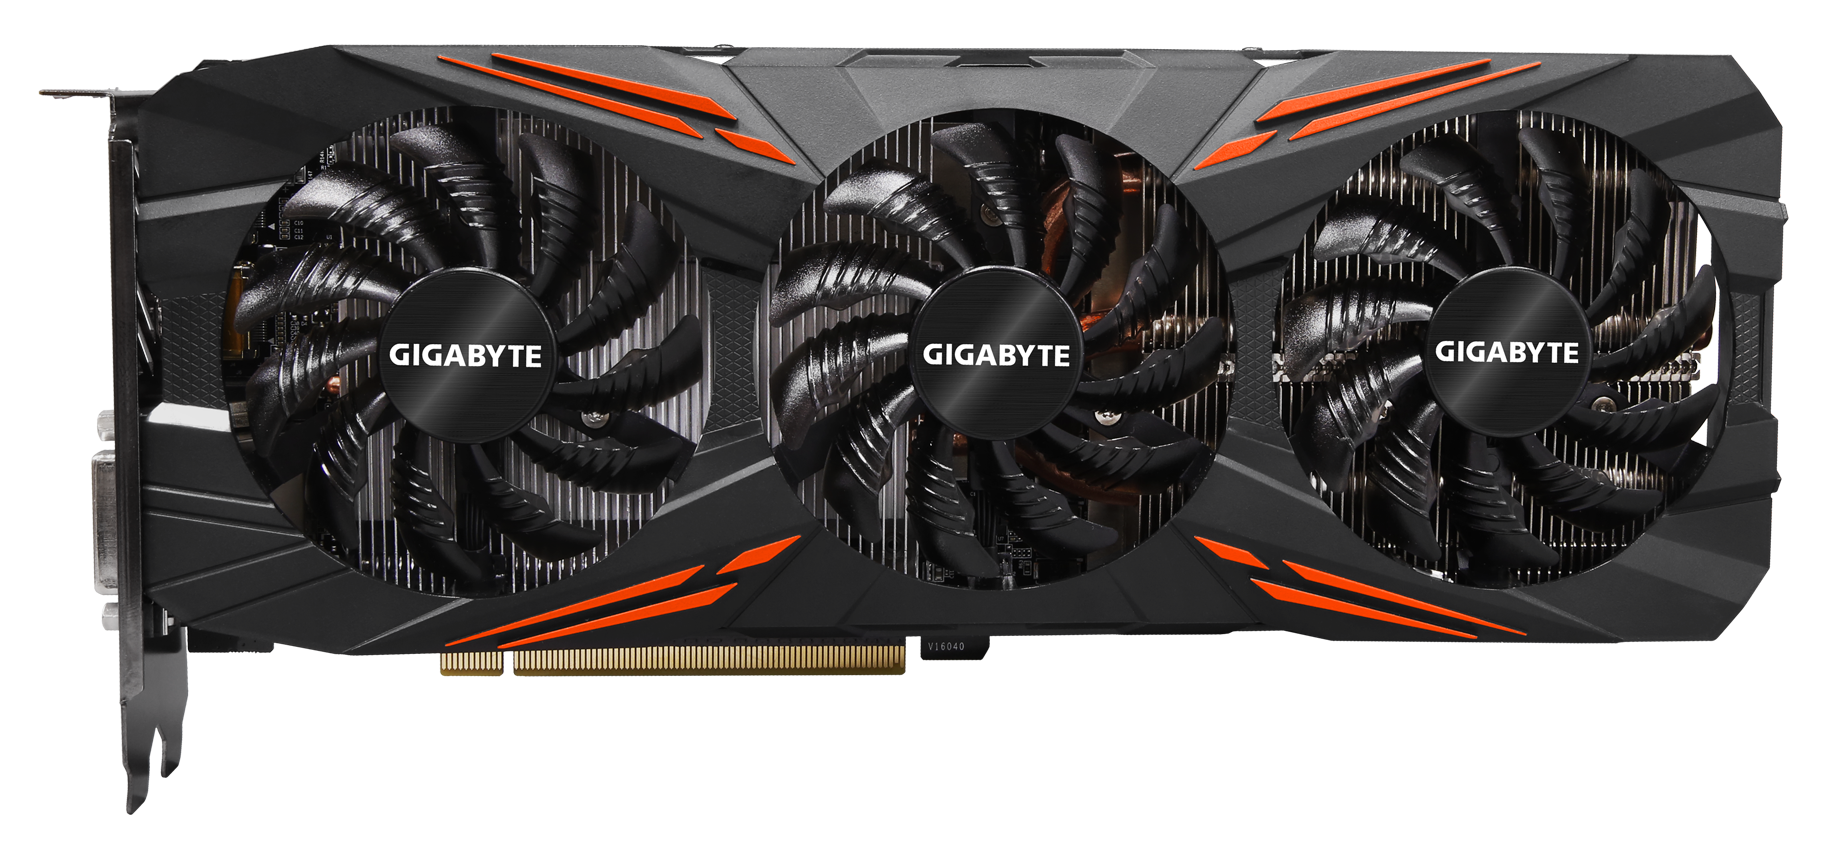 GIGABYTE Releases GeForce® GTX 1070 G1 GAMING Graphics Card | Noticias - GIGABYTE Ecuador